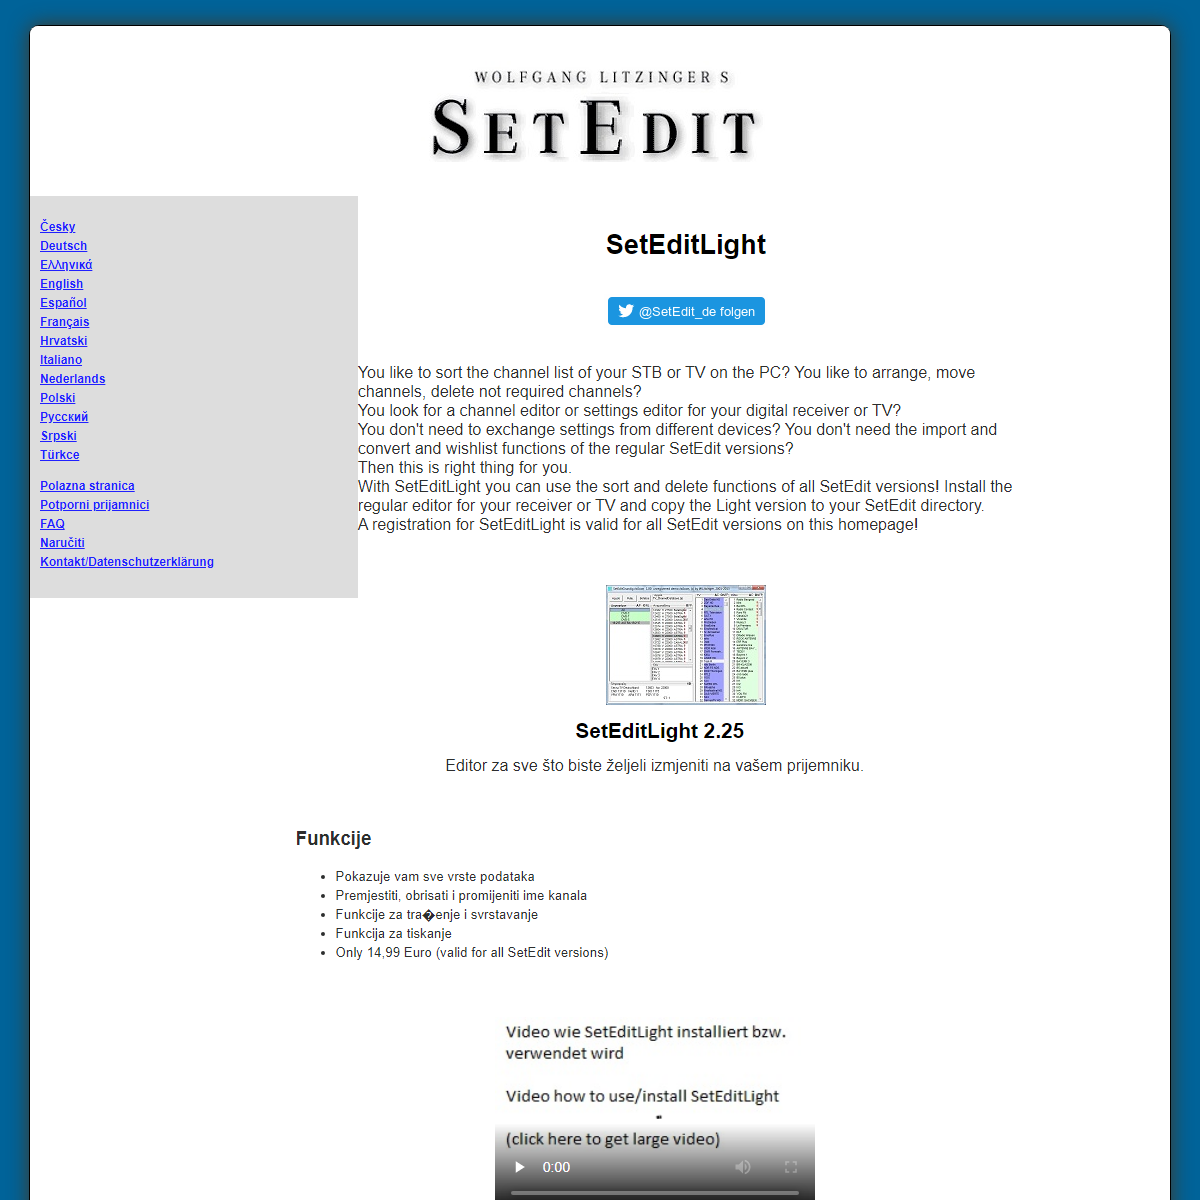 A complete backup of https://www.setedit.de/SetEdit.php?spr=13&Editor=169